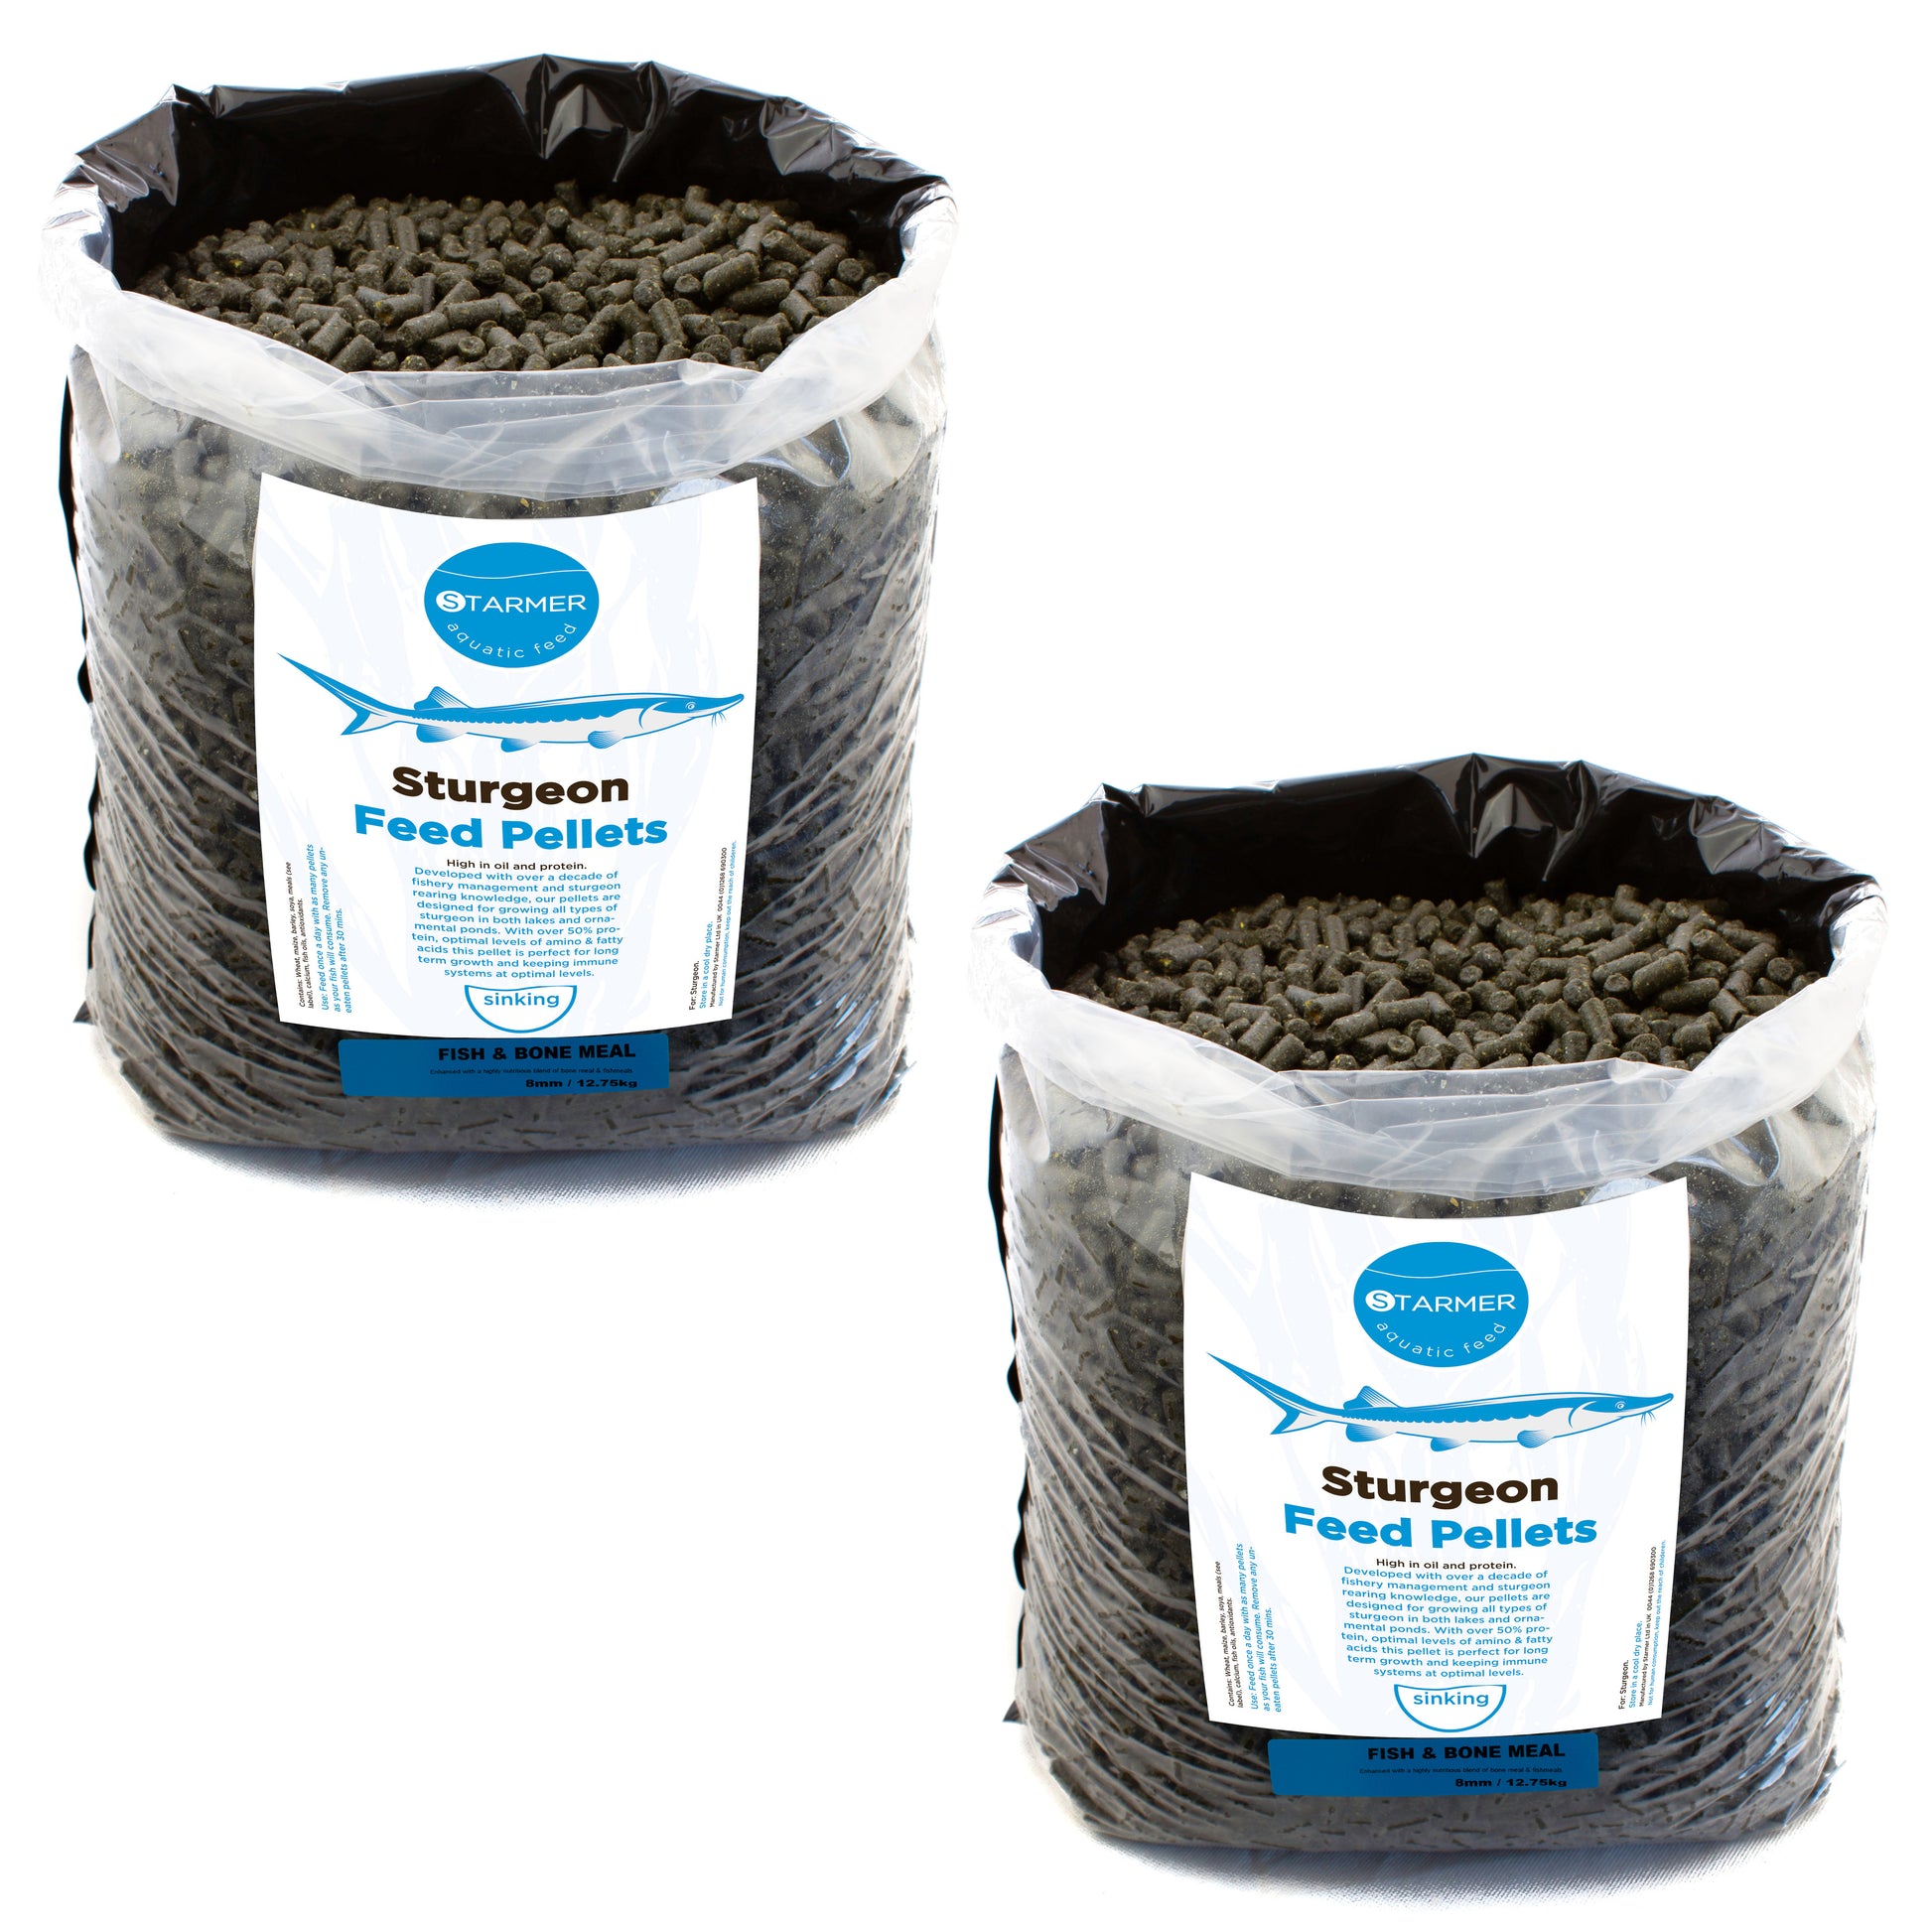 8mm FISH & BONE sturgeon pellets